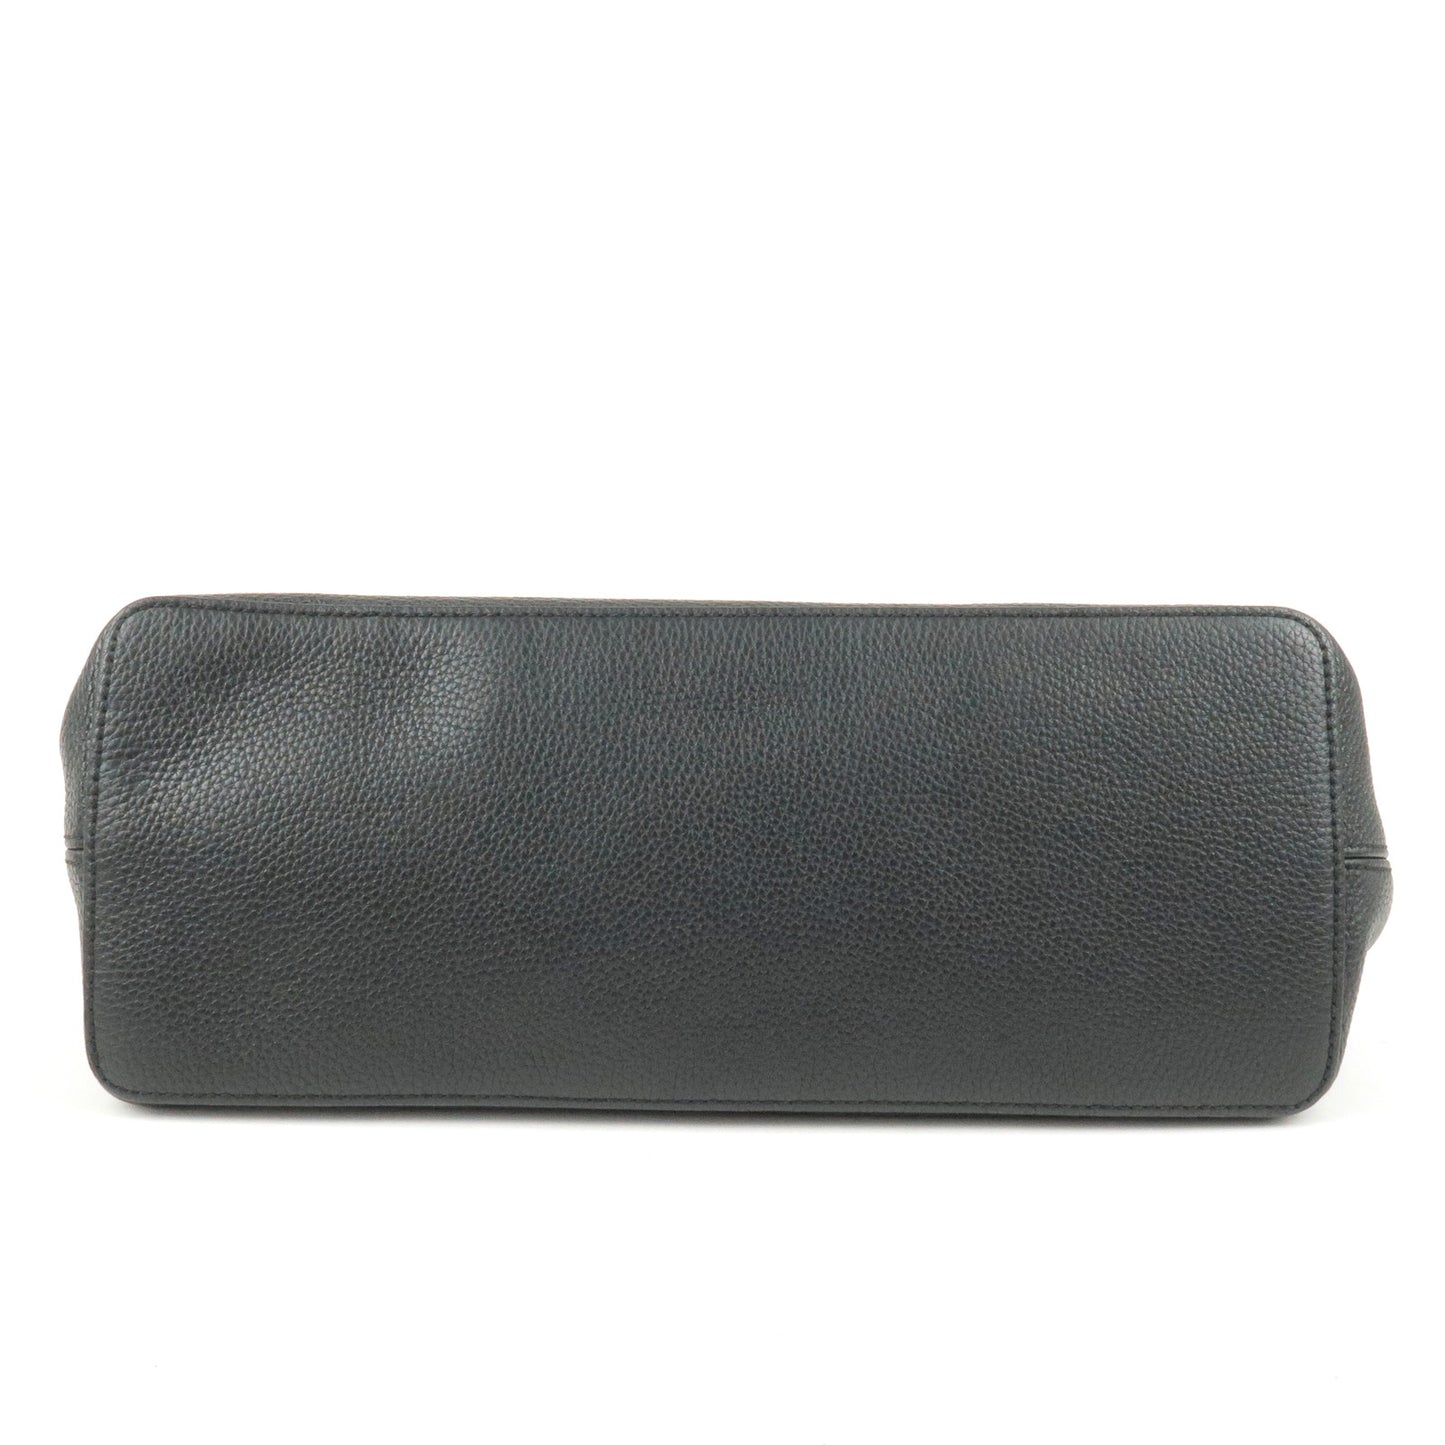 GUCCI SOHO Interlocking G Leather Shoudler Bag Black 536194